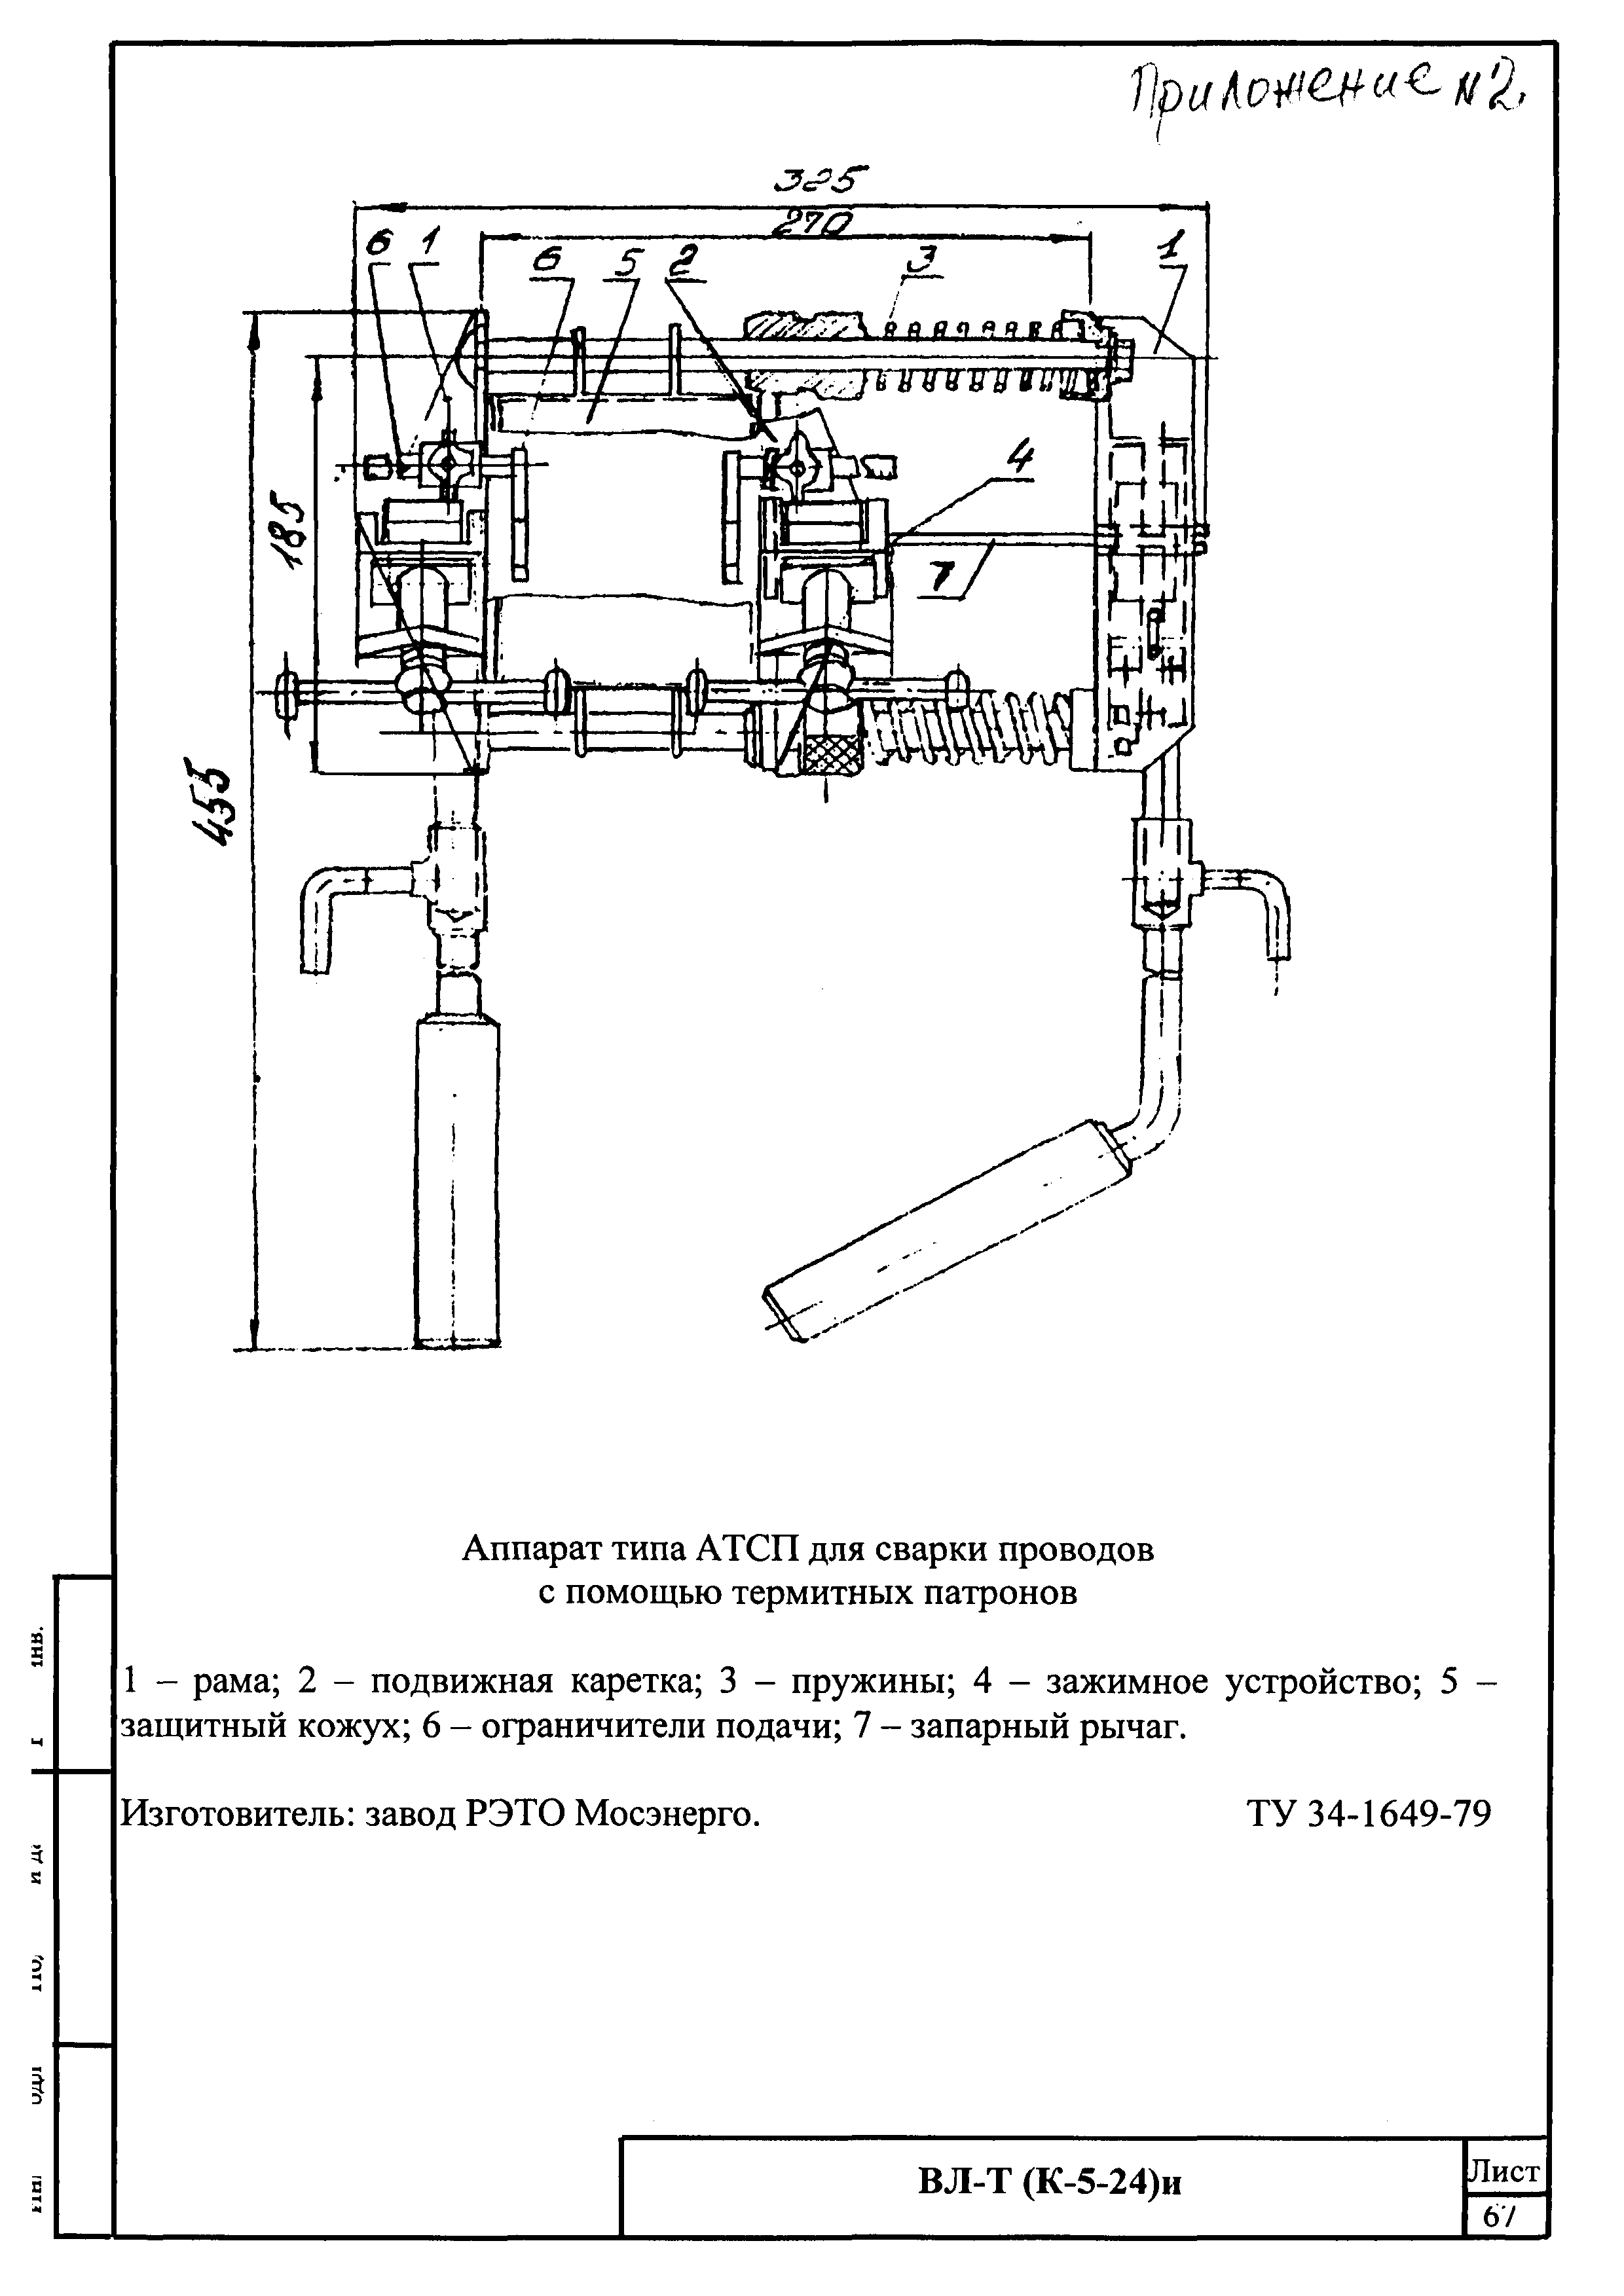 Технологическая карта К-5-24-1и